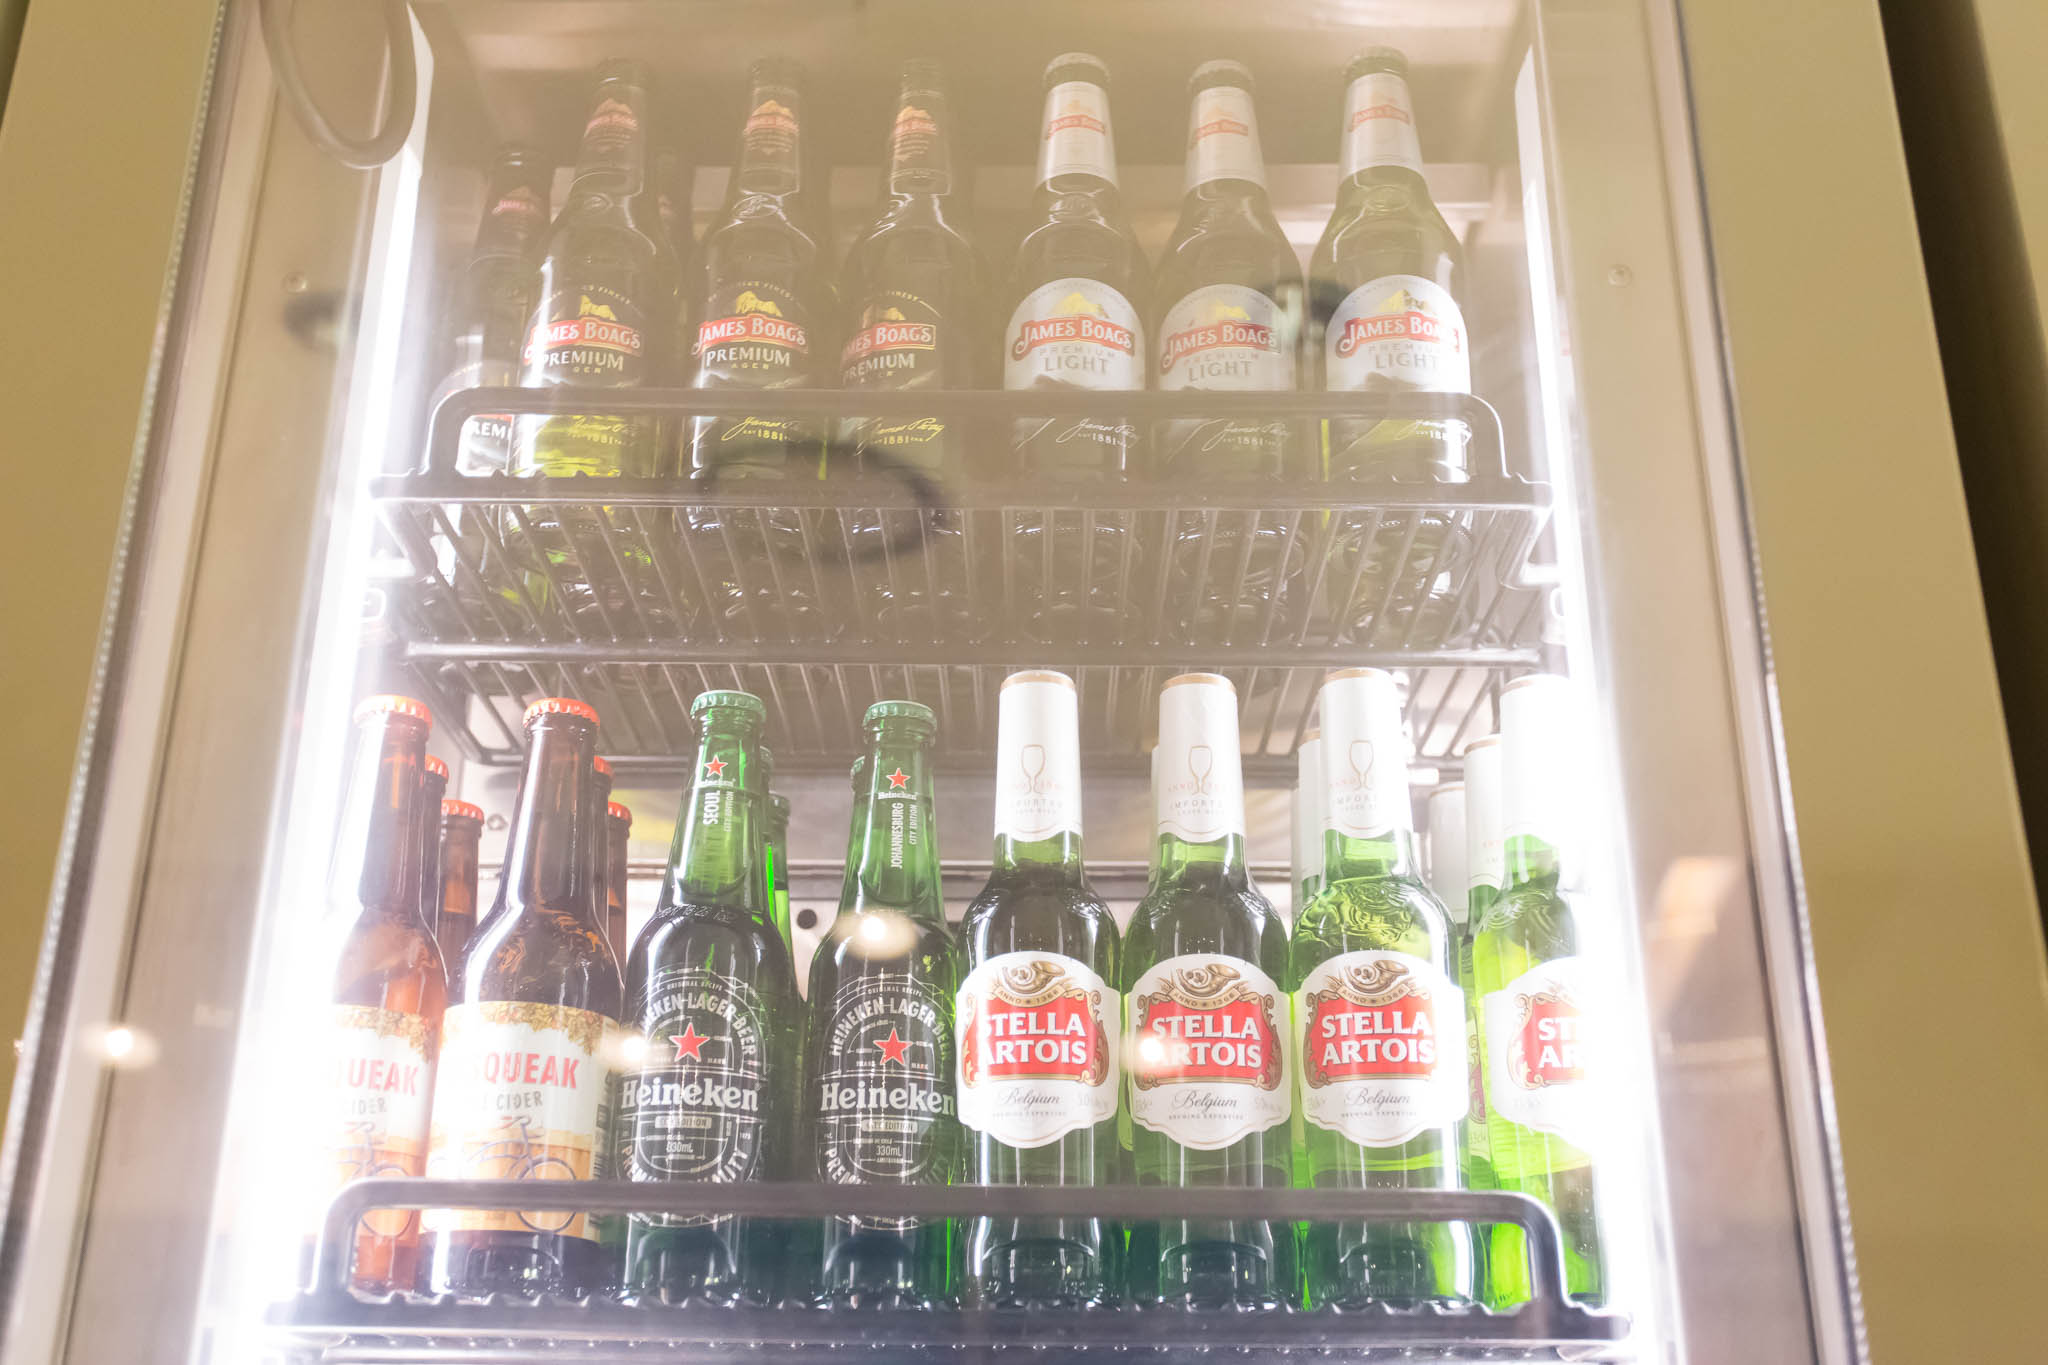 a shelf of beer bottles